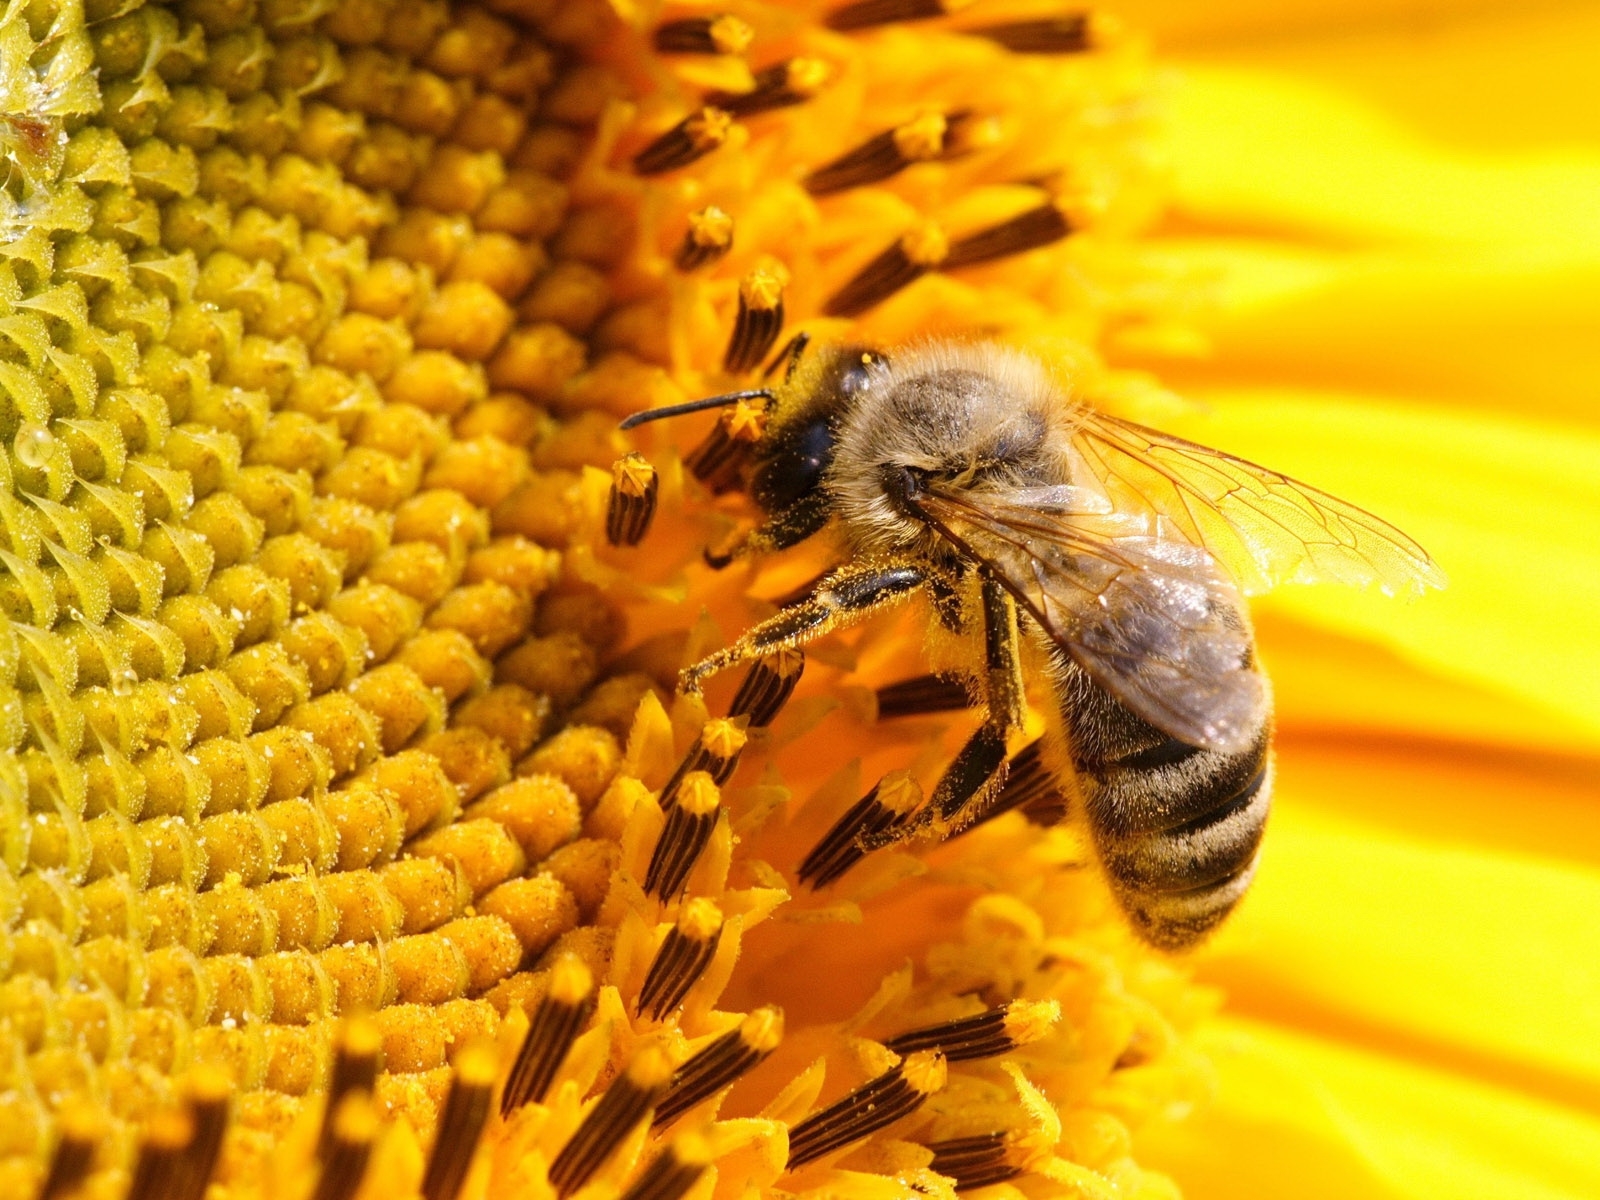 Популярные заставки и фоны Пчелы на компьютер